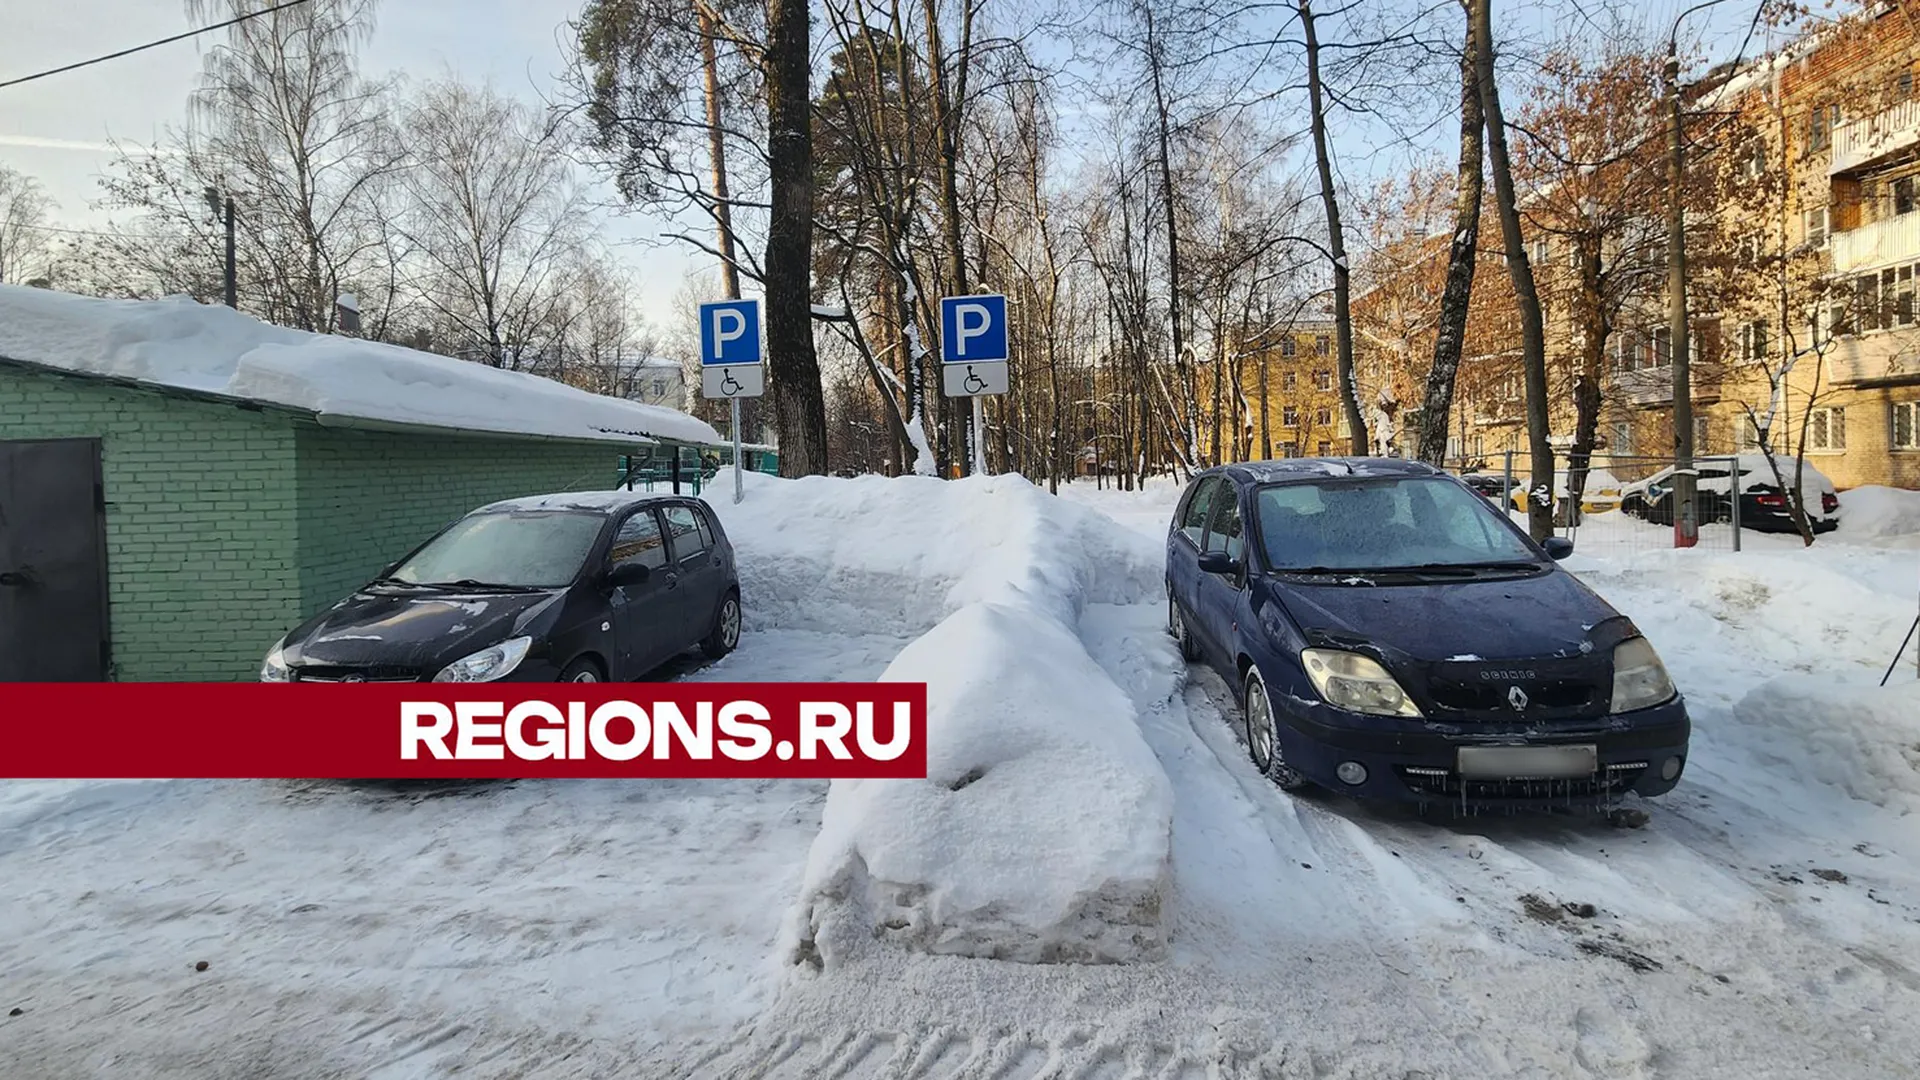 Парковочные места для инвалидов появились в Пушкино на улице Маяковского